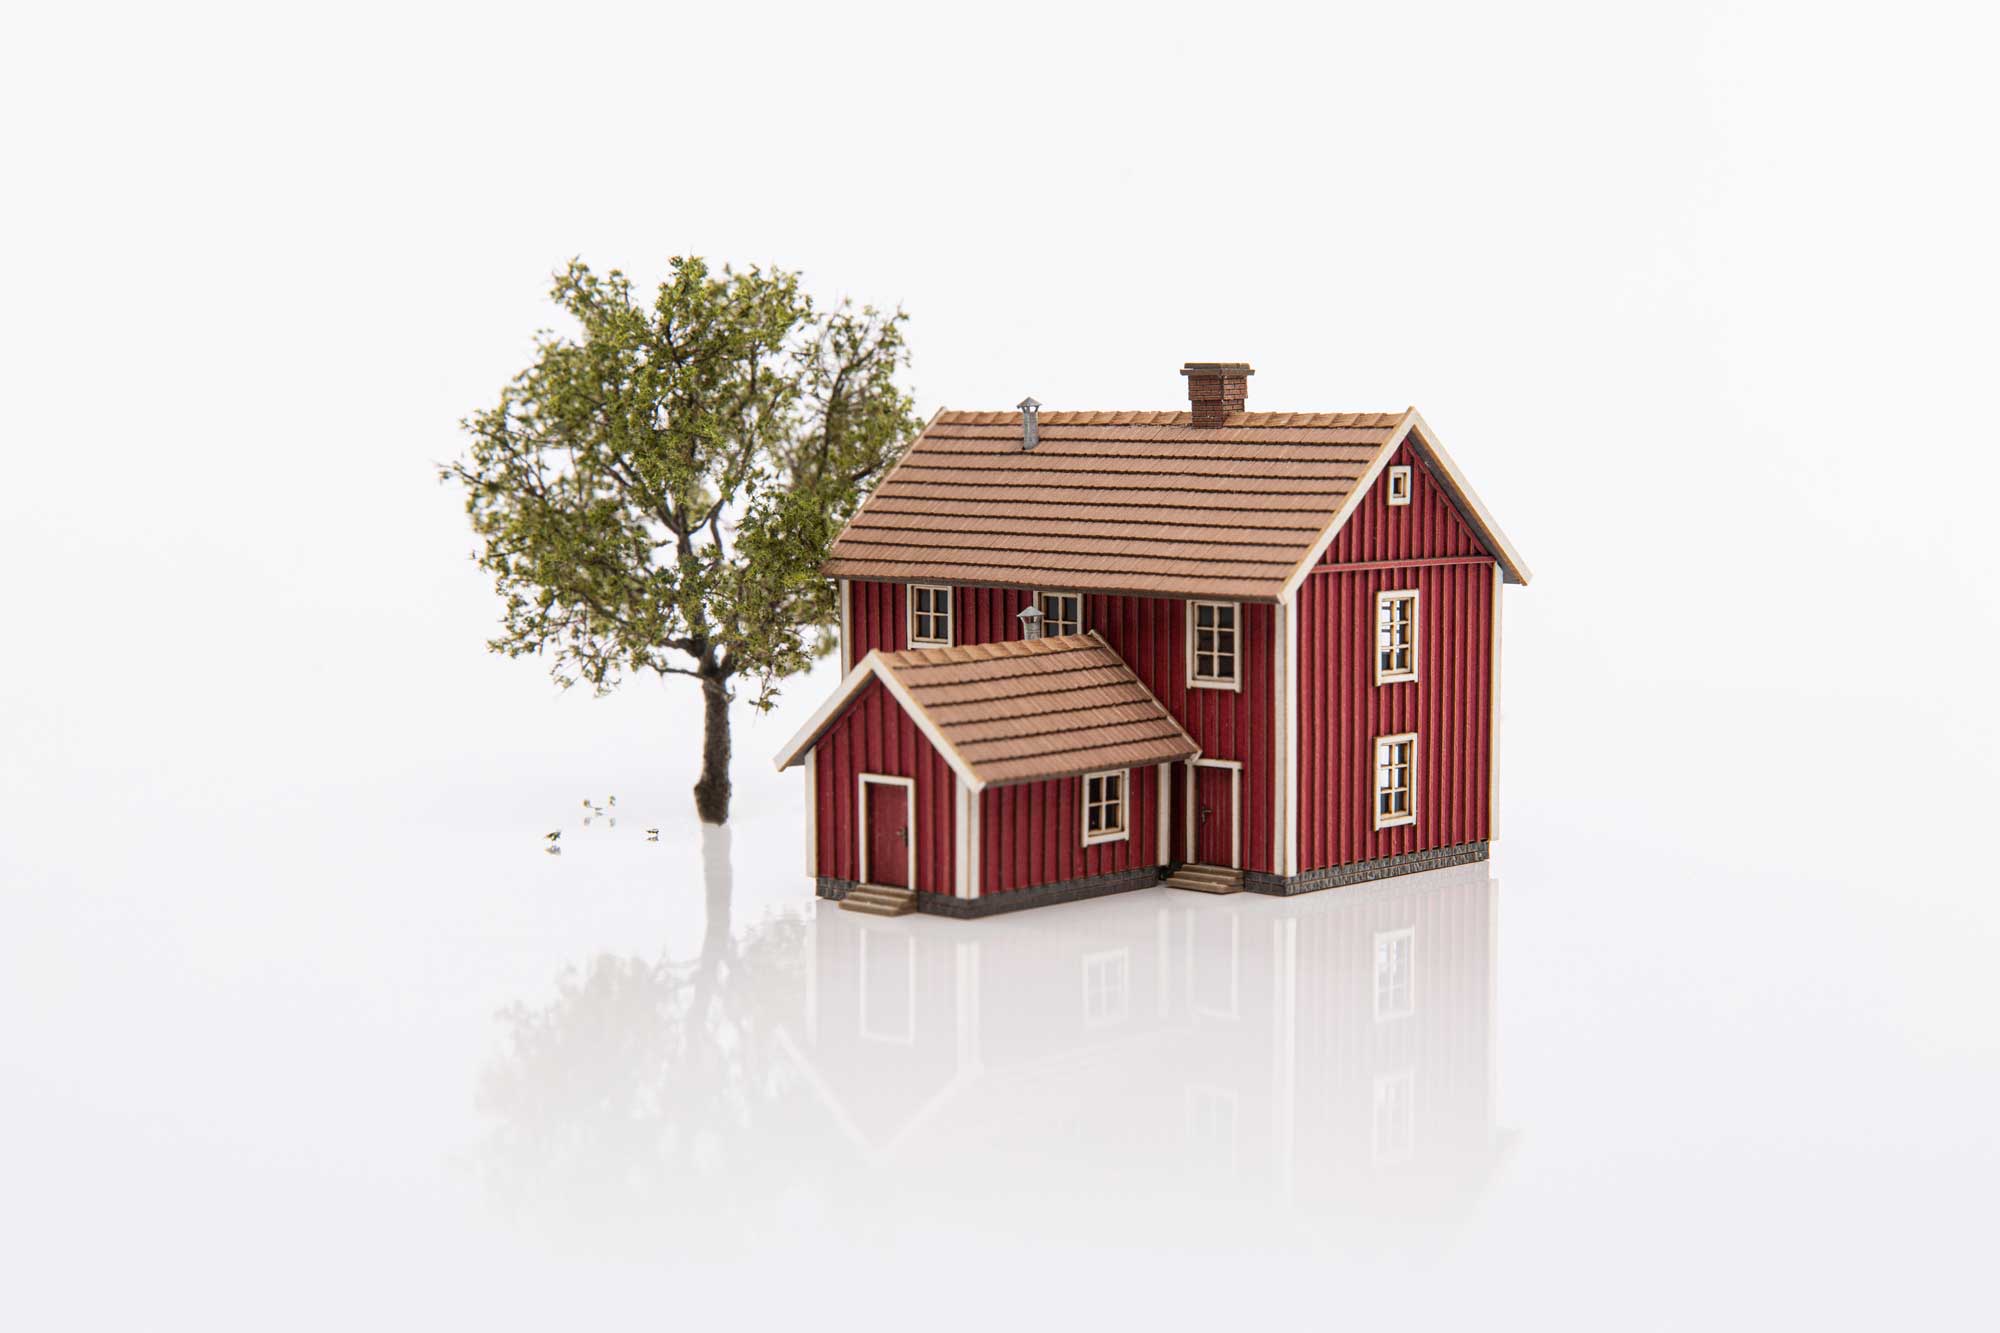 409202: Building “Lyngstad gård” – falunred